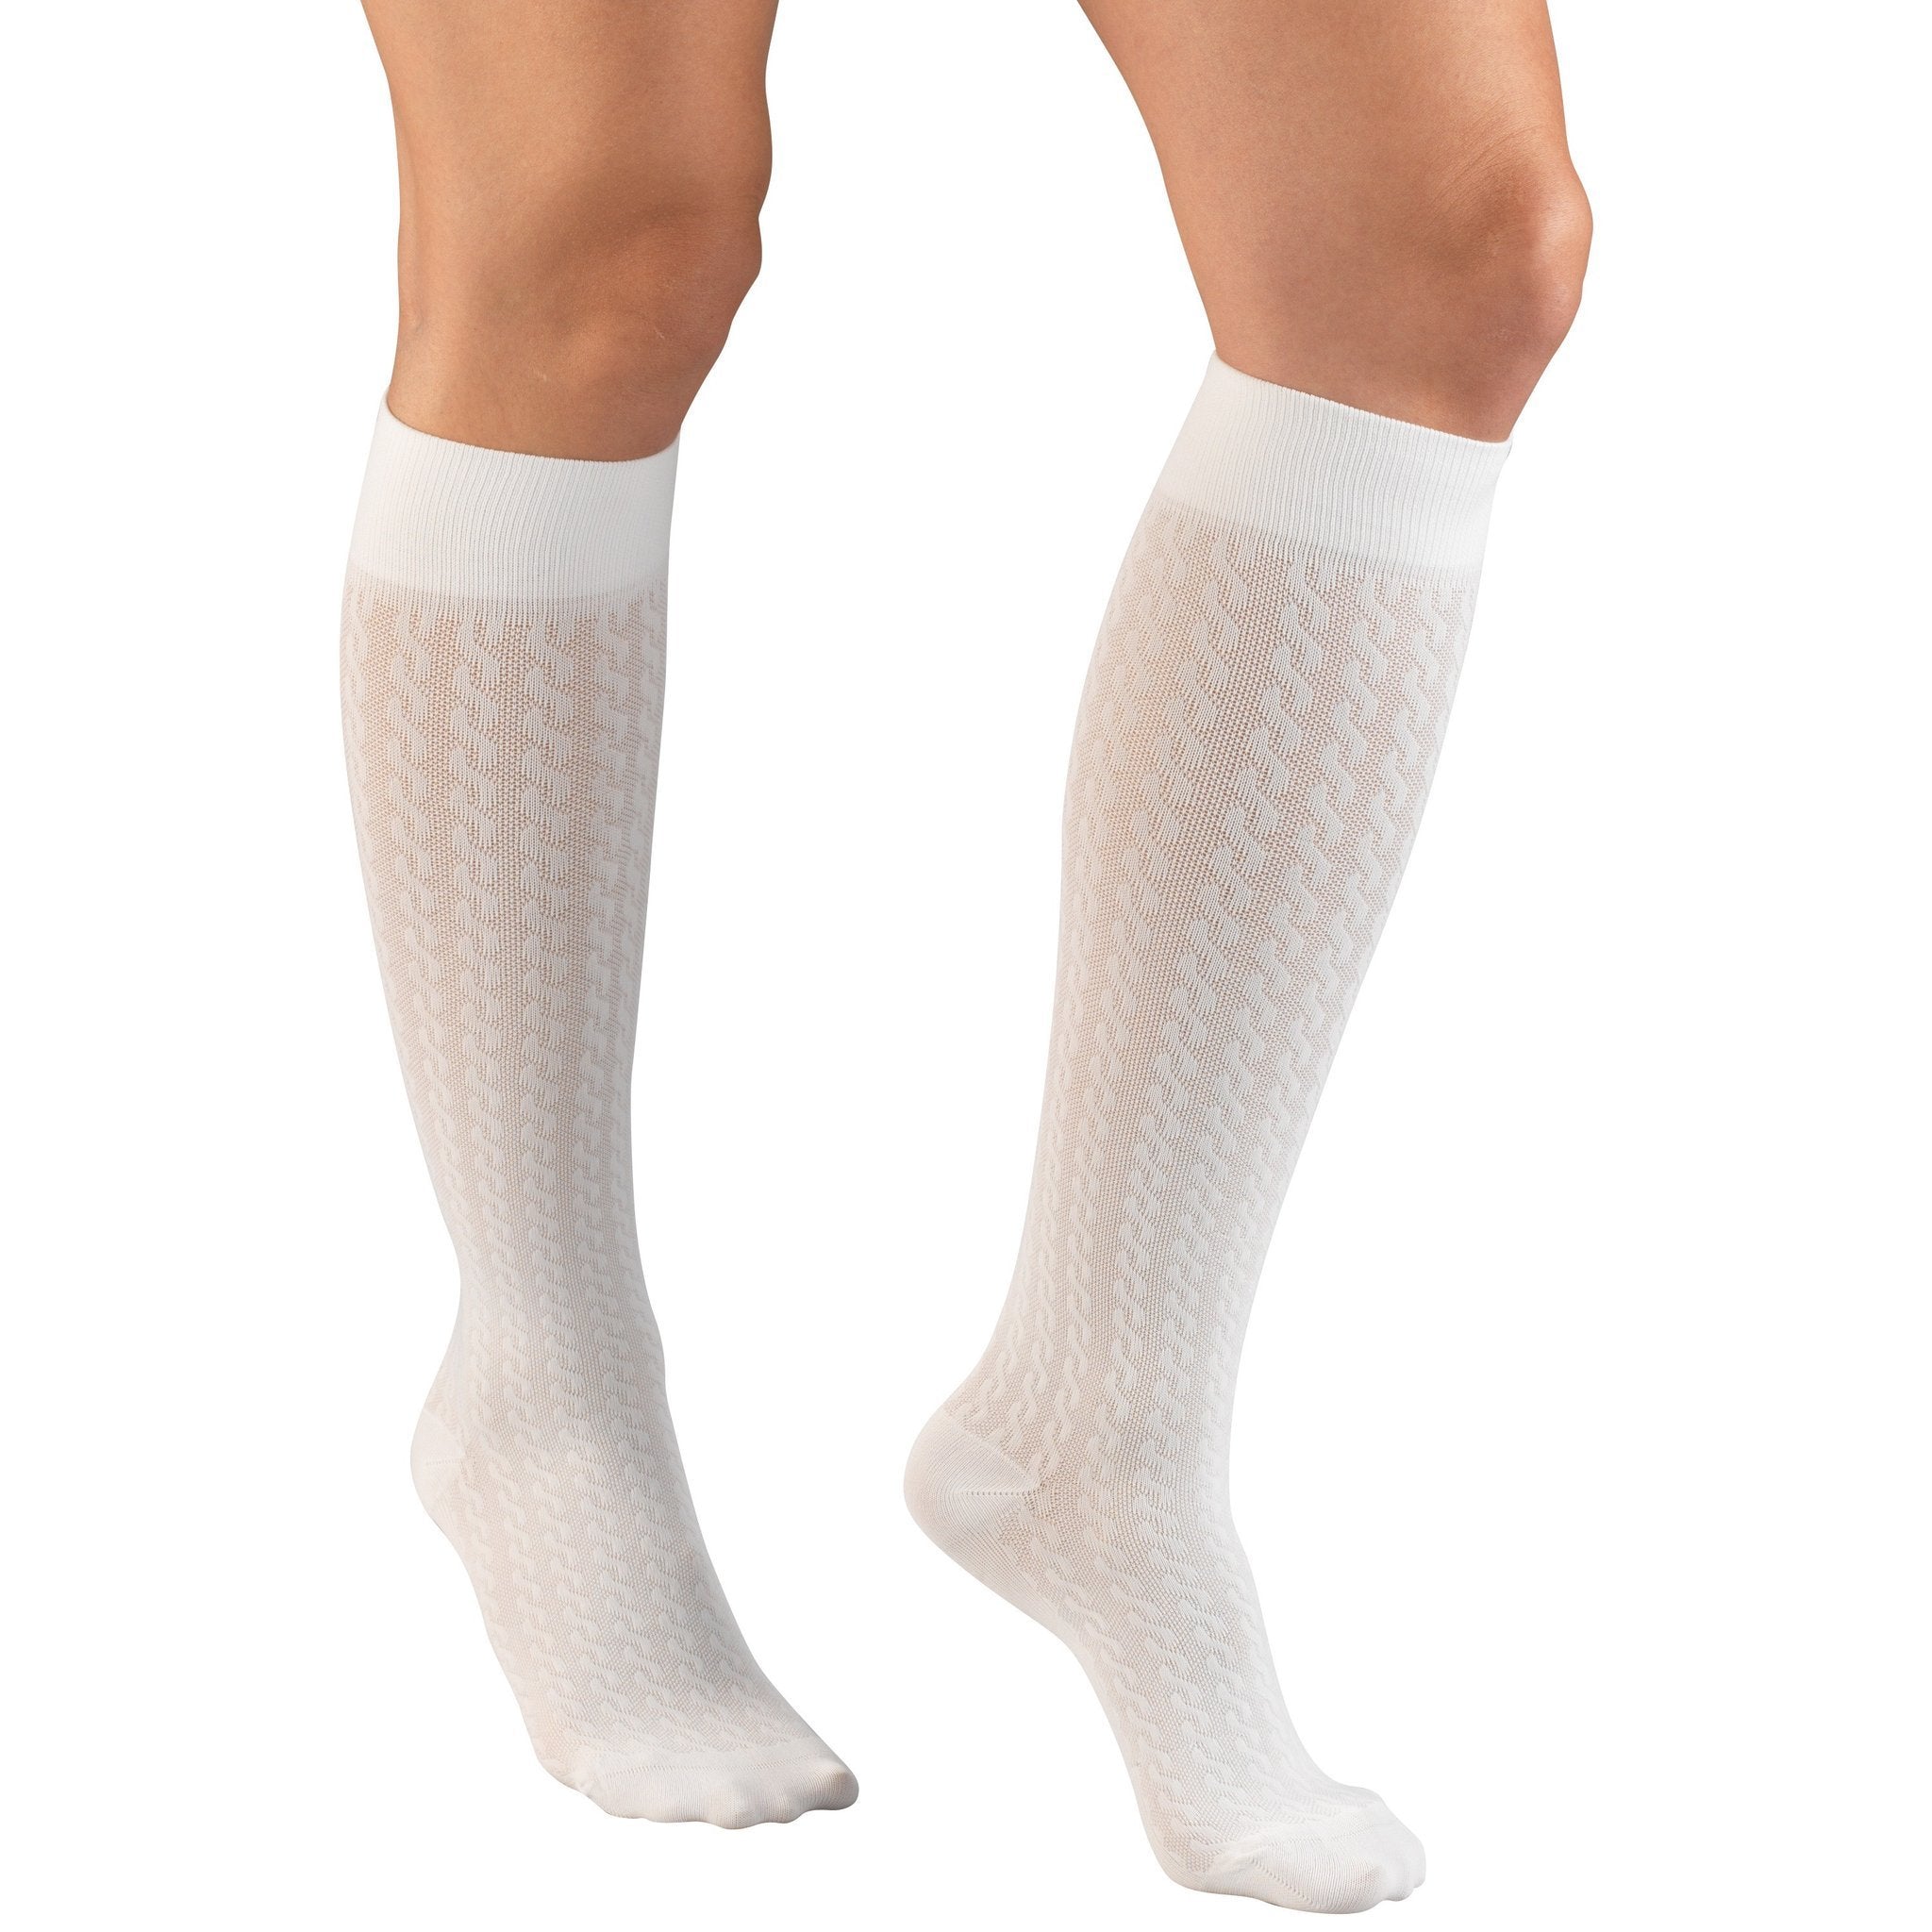 Truform Women's Trouser 15-20 mmHg Cable Knee High, White